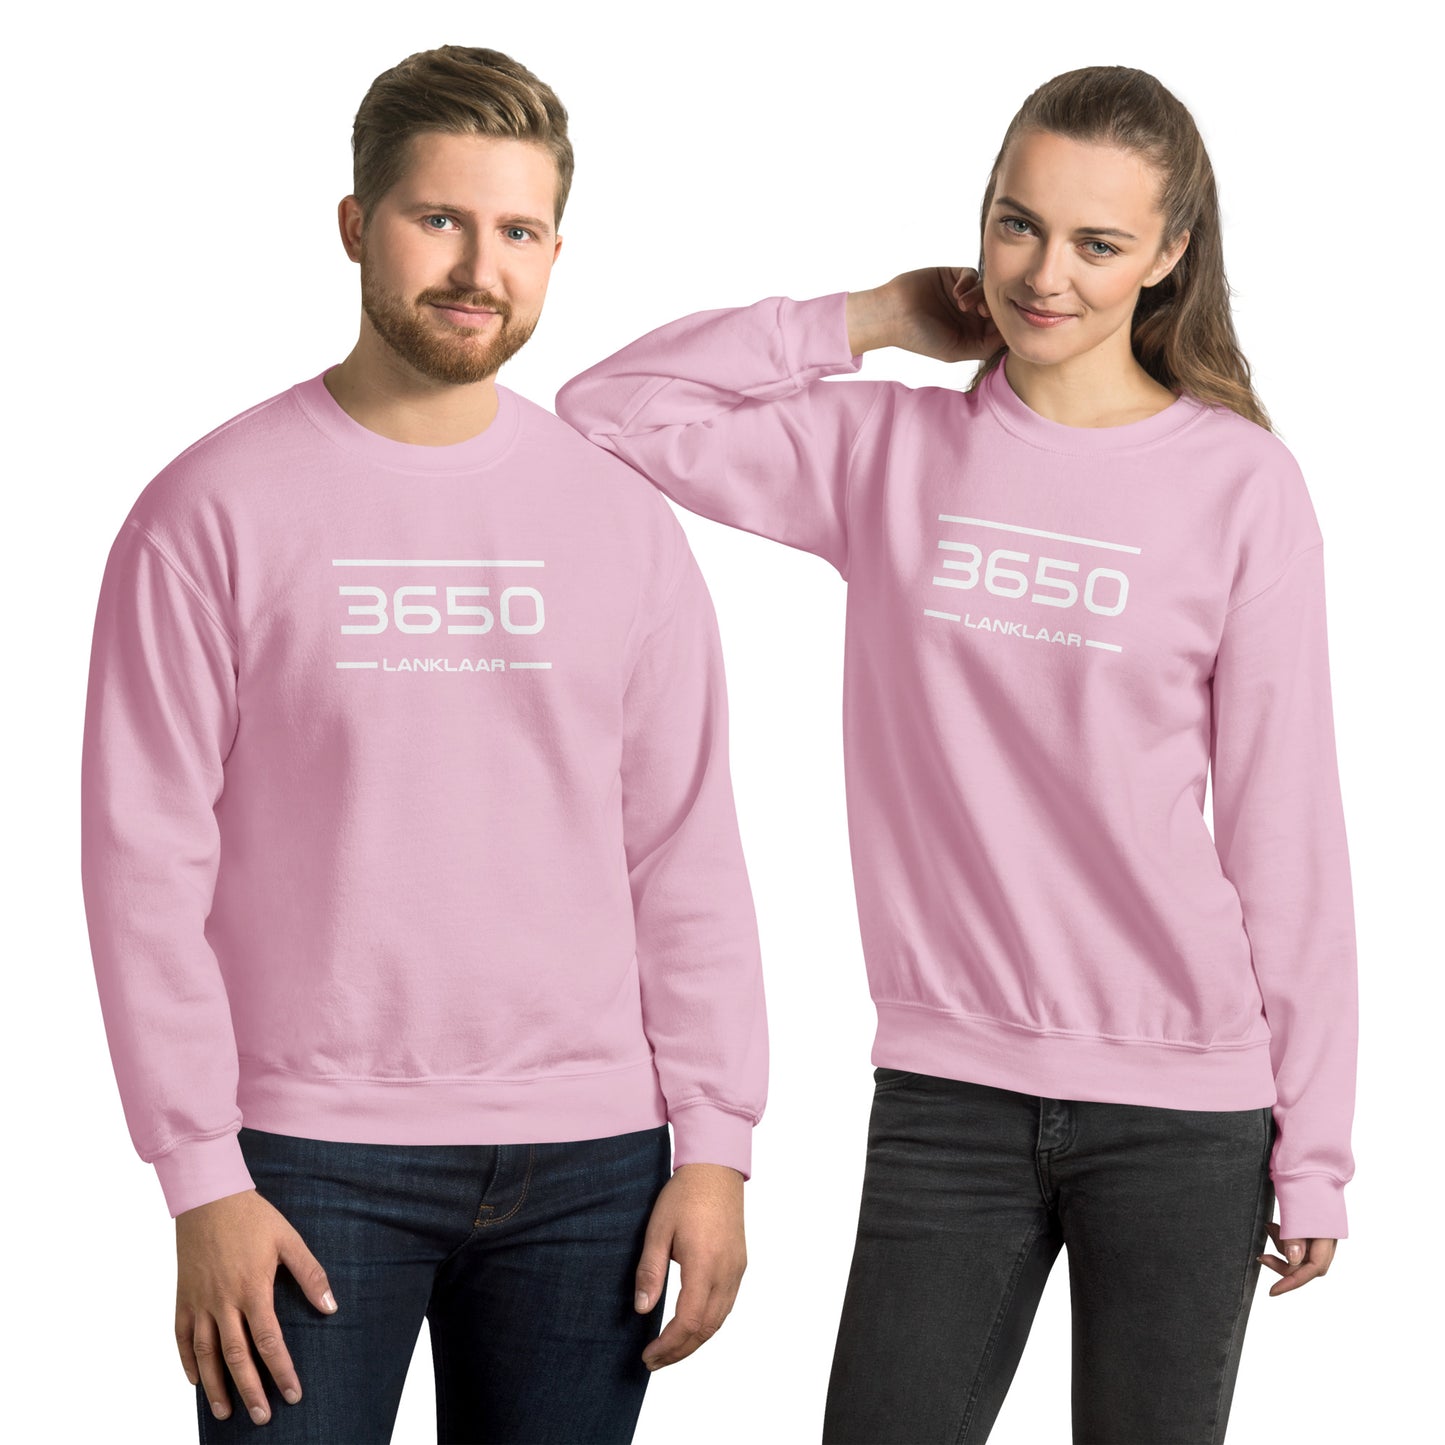 Sweater - 3650 - Lanklaar (M/V)